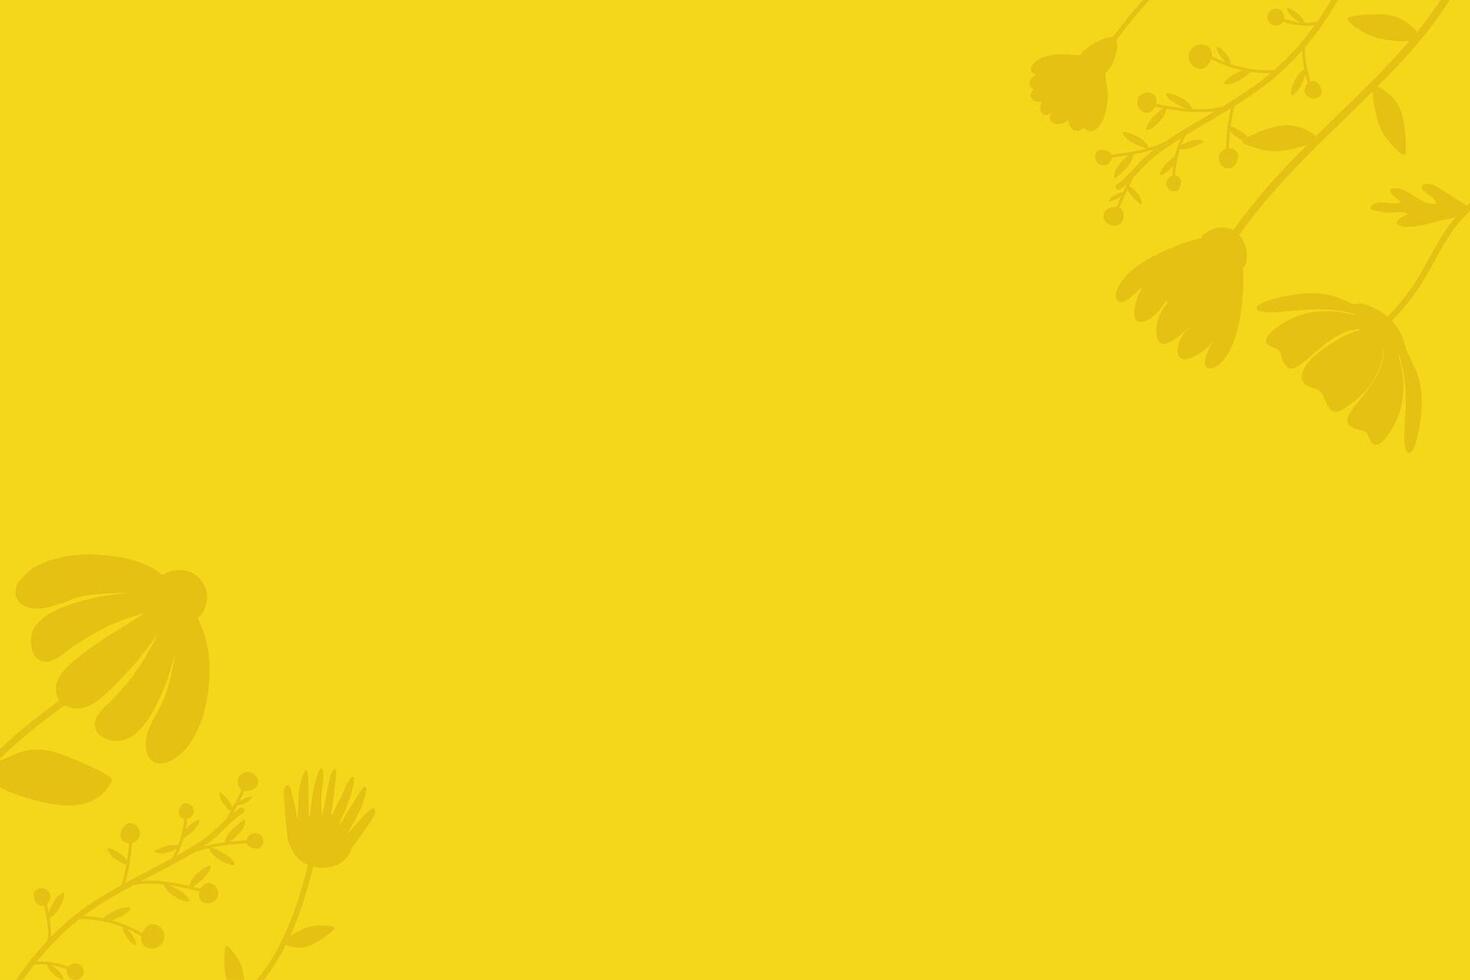 amarelo fundo com impressões, baixo-relevo do flores em lados, silhuetas. vetor ilustração